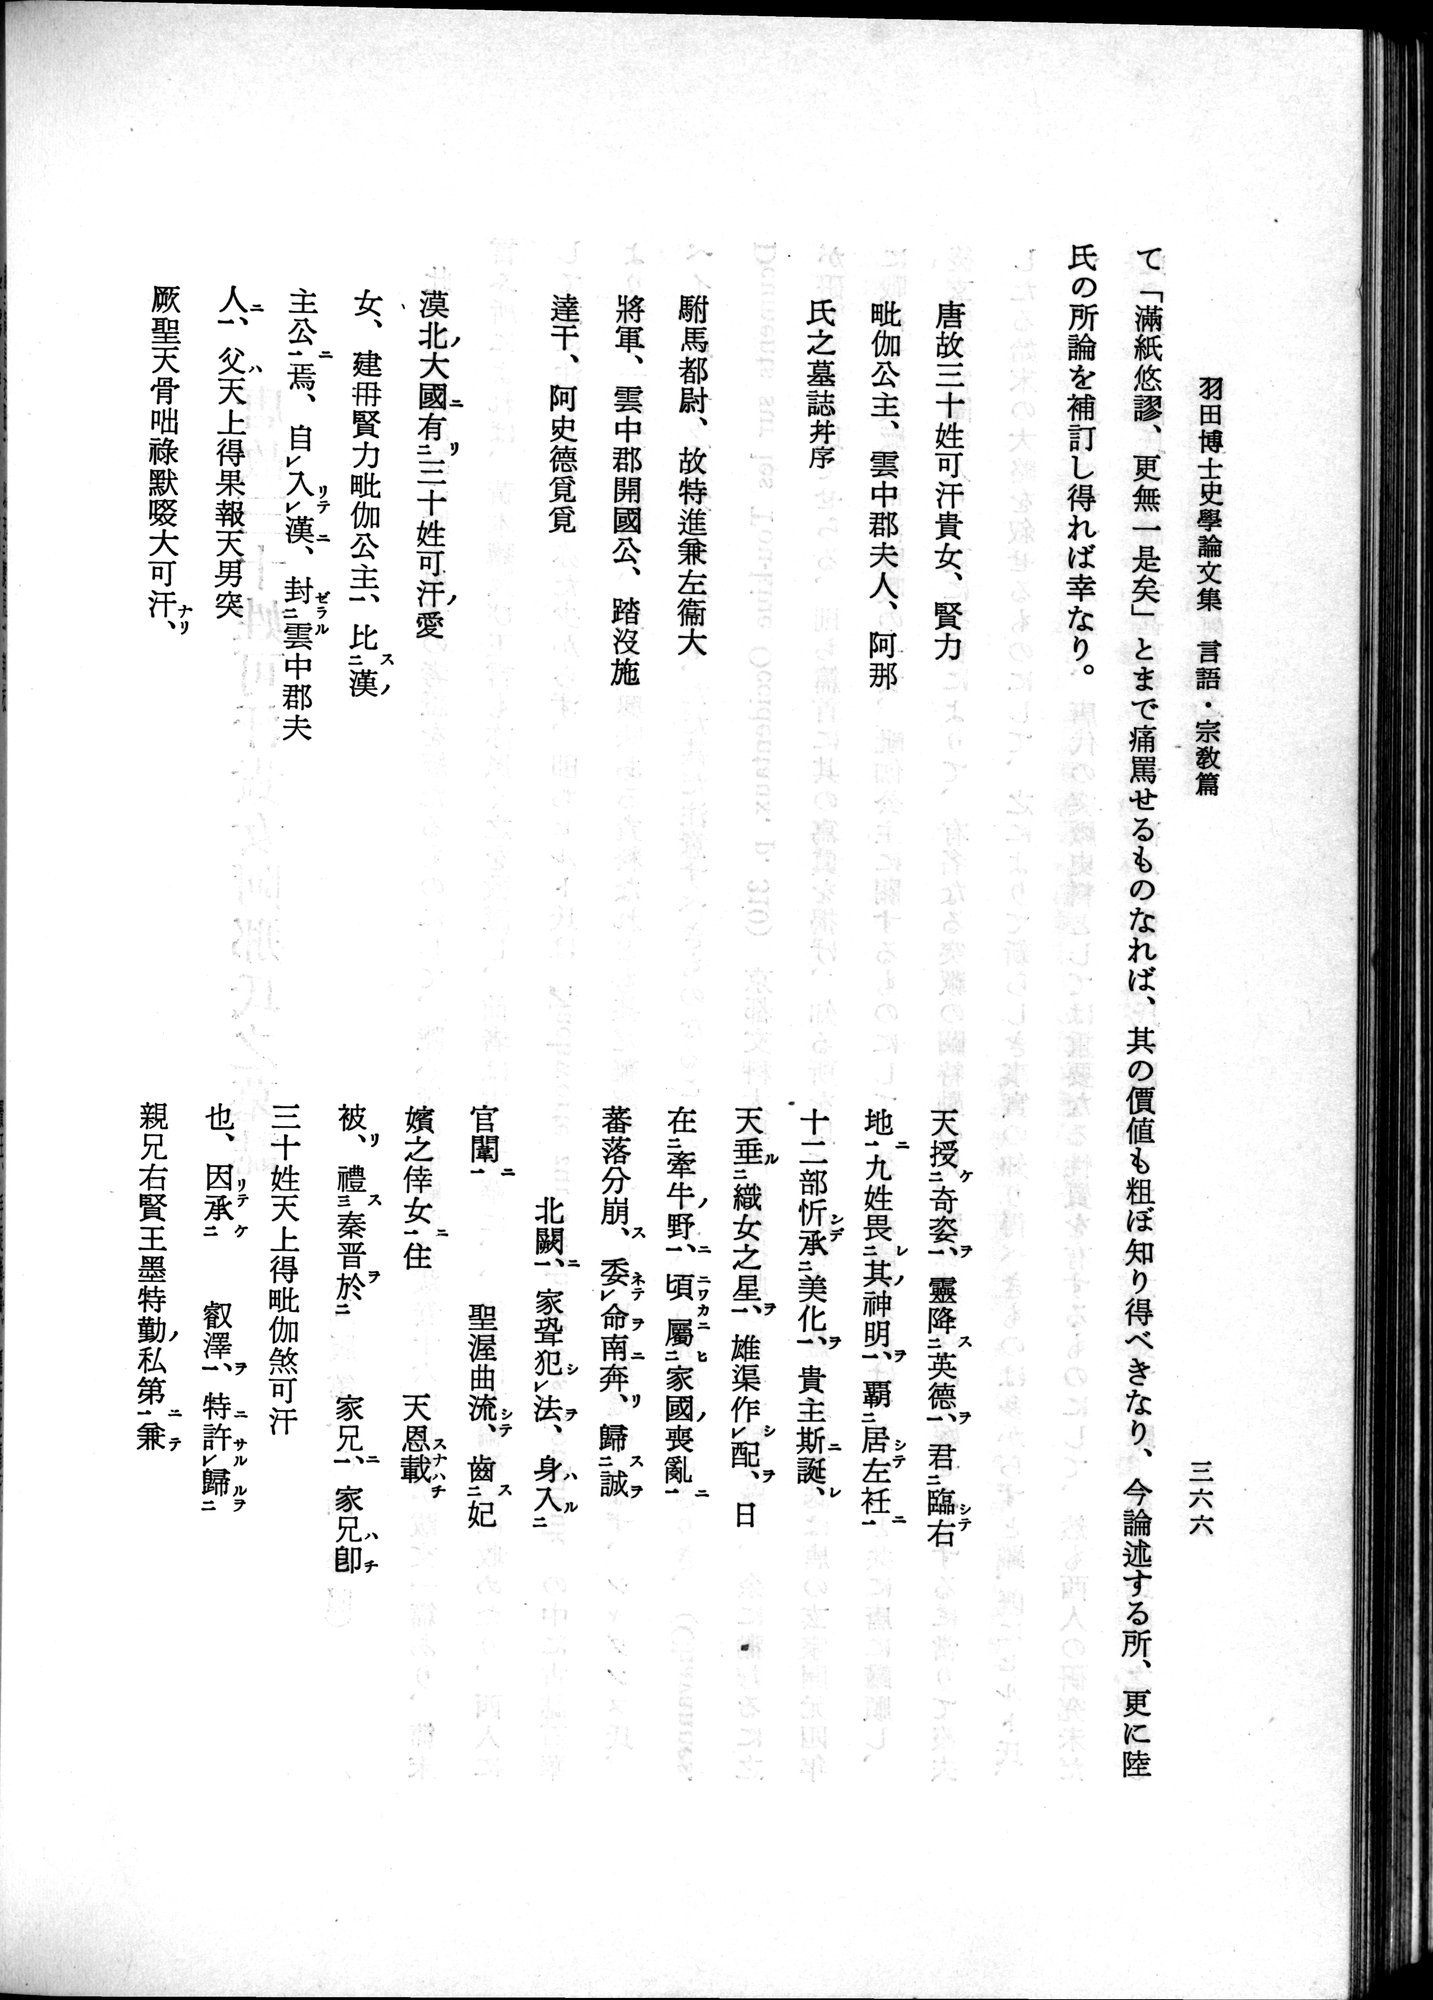 羽田博士史学論文集 : vol.2 / 428 ページ（白黒高解像度画像）